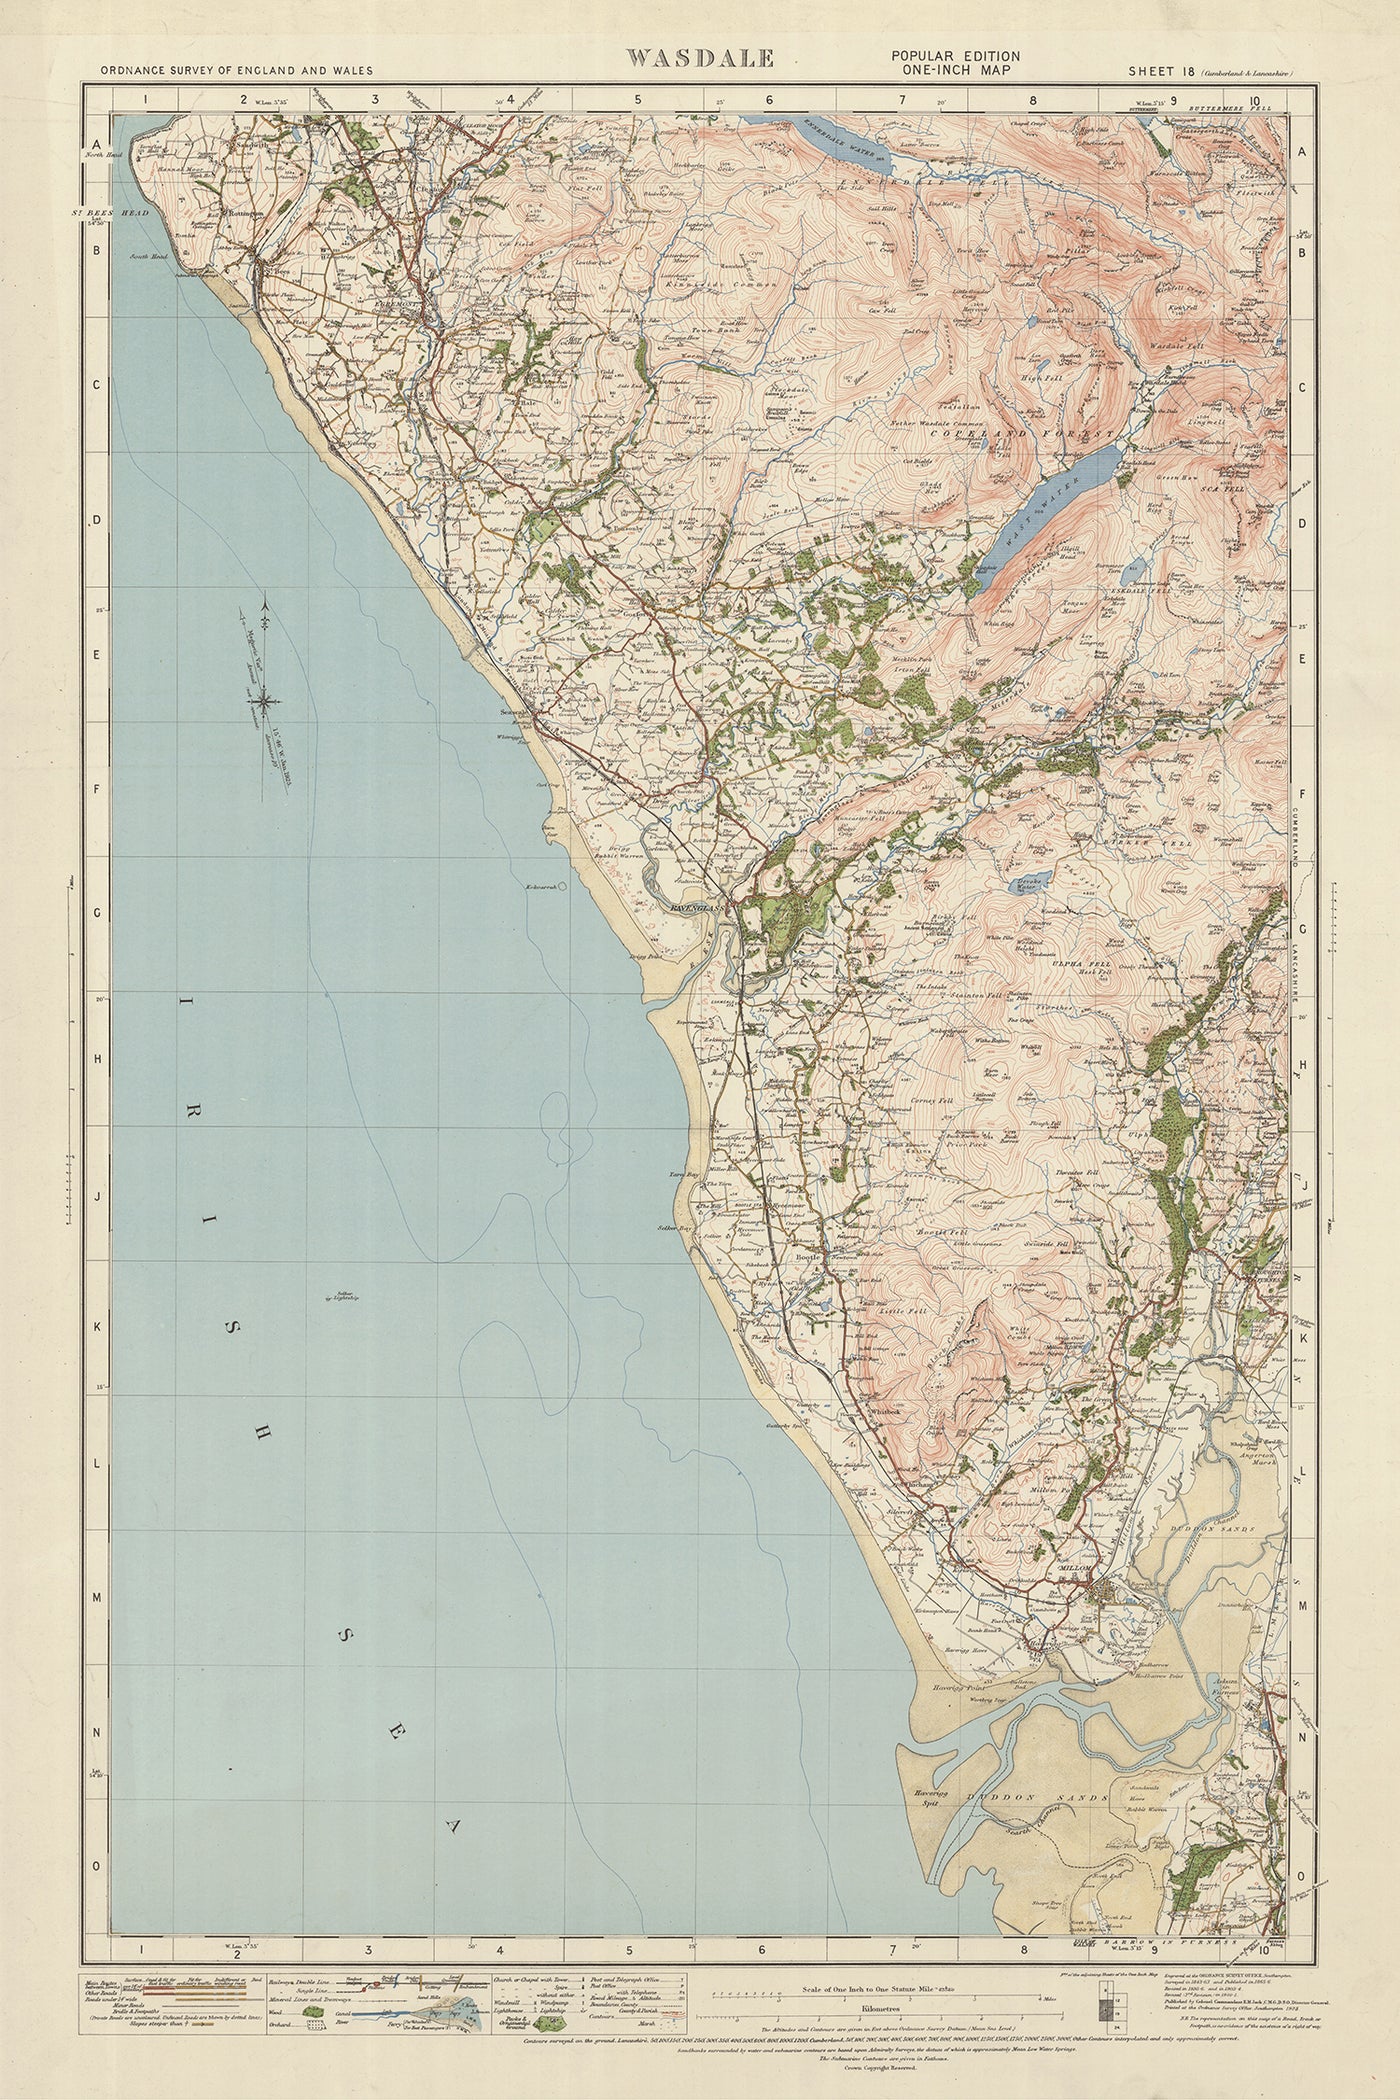 Antiguo mapa de Ordnance Survey, hoja 18 - Wasdale, 1925: Egremont, Ravenglass, Millom, Scafell Pike, Parque Nacional del Distrito de los Lagos